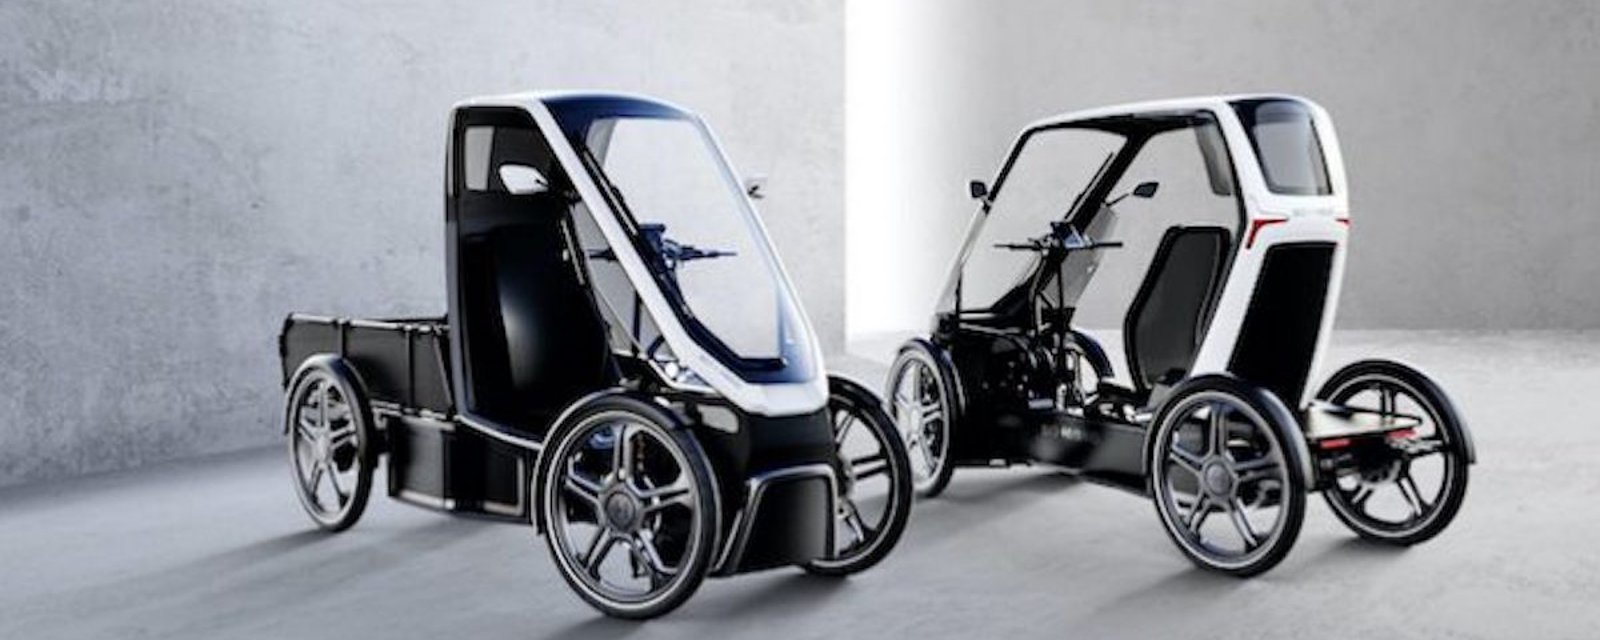 Un hybride de vélo et d’auto: la mobilité du futur?